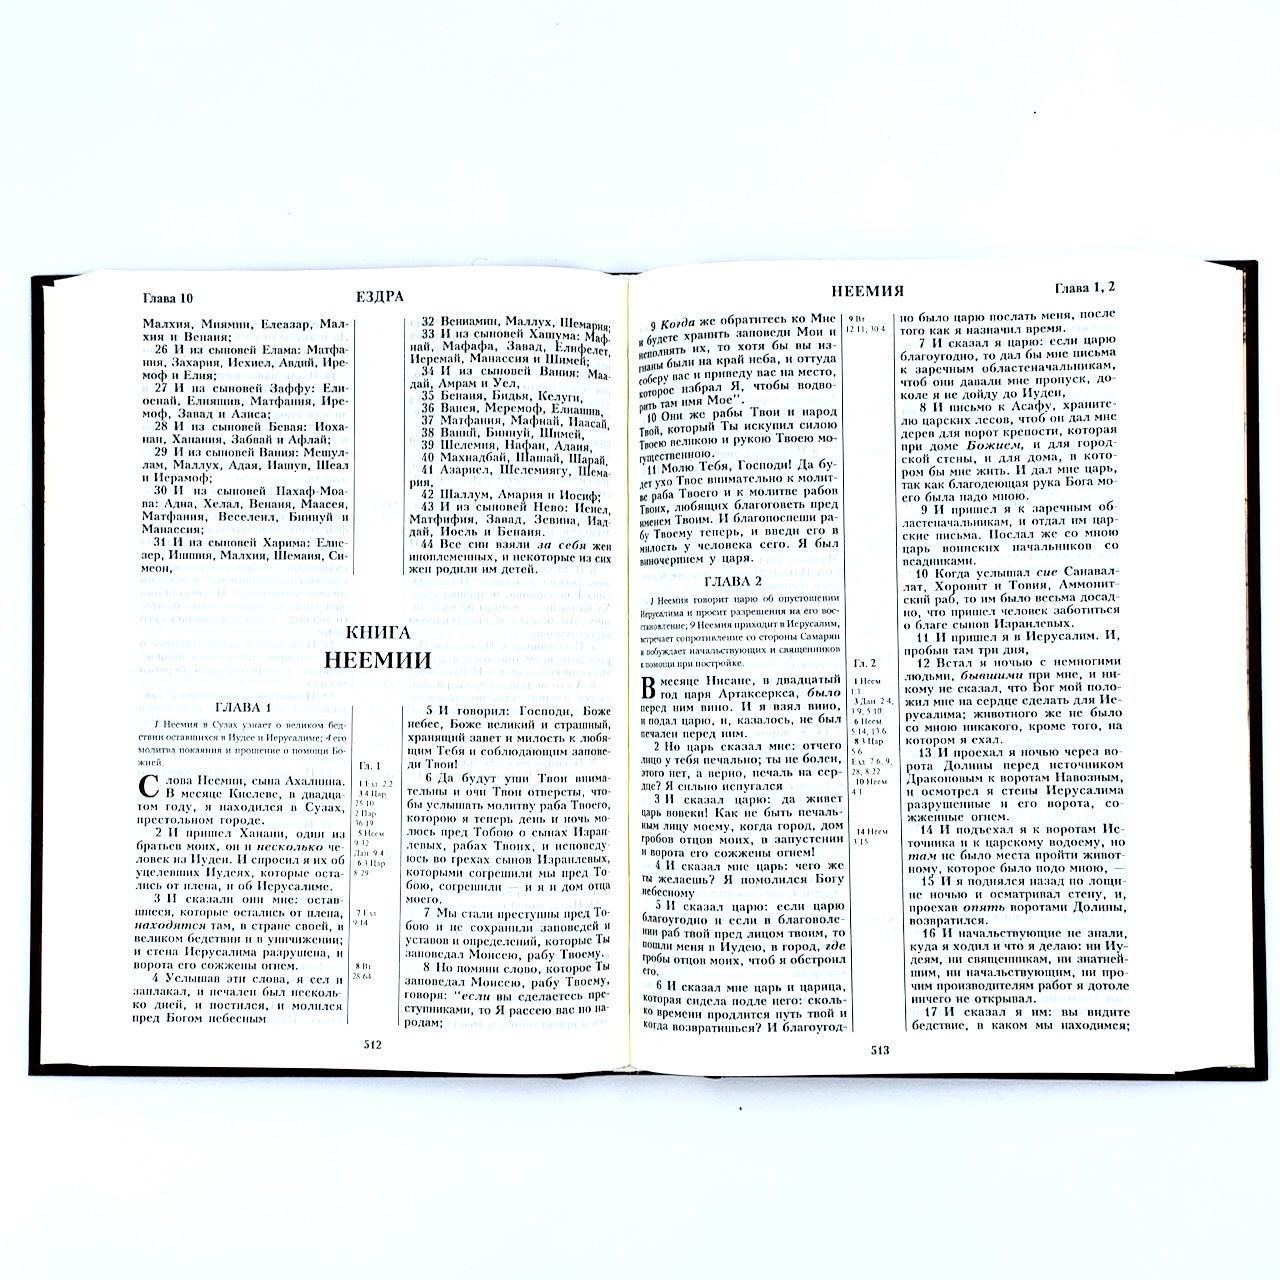 Библия 073 Большой формат надпись "Библия" орнамент про краям, размер 170*236 мм, твердый переплет, крупный шрифт 14 кегель, кремовые страницы, цвет коричневый